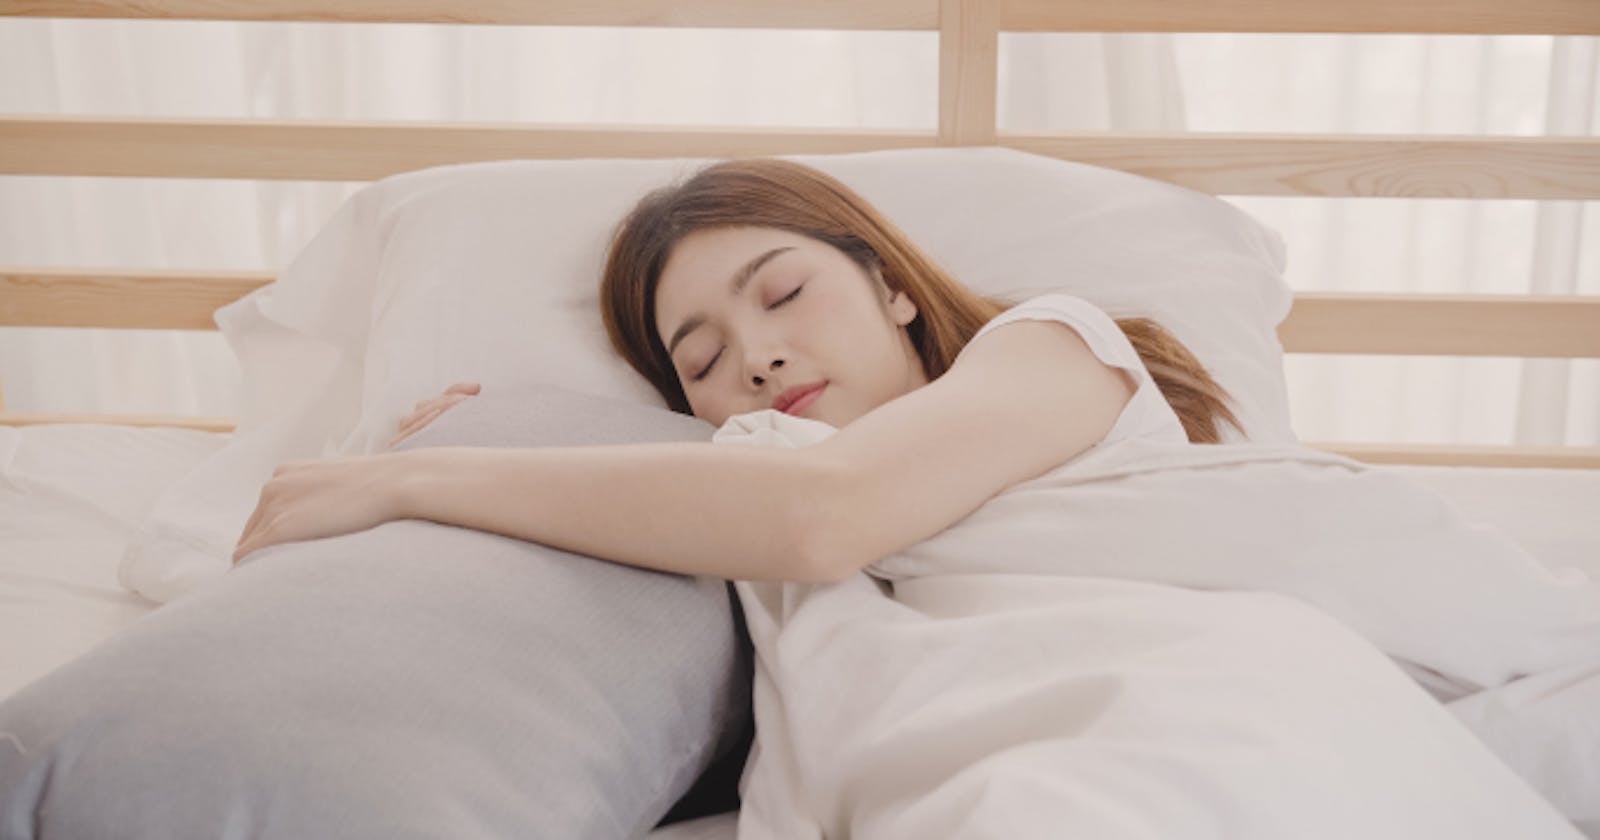 Bài tập thở 4-7-8 cải thiện giấc ngủ